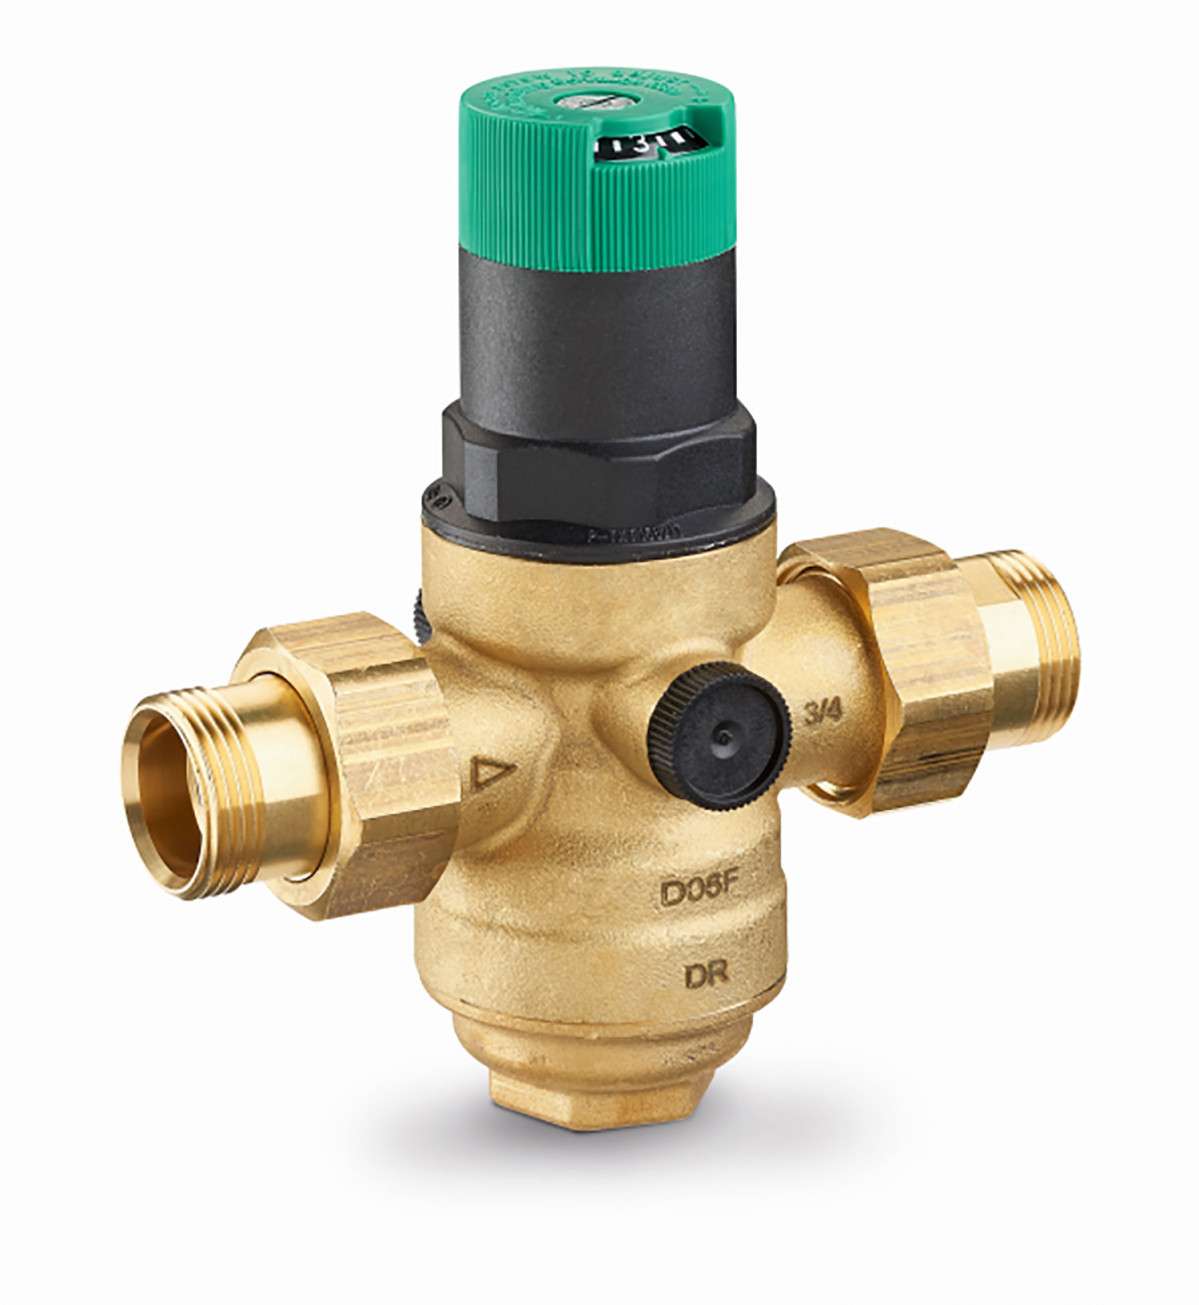 Las válvulas reductoras de presión protegen las instalaciones domésticas de agua contra la presión excesiva de la red de suministro y los daños por presión.